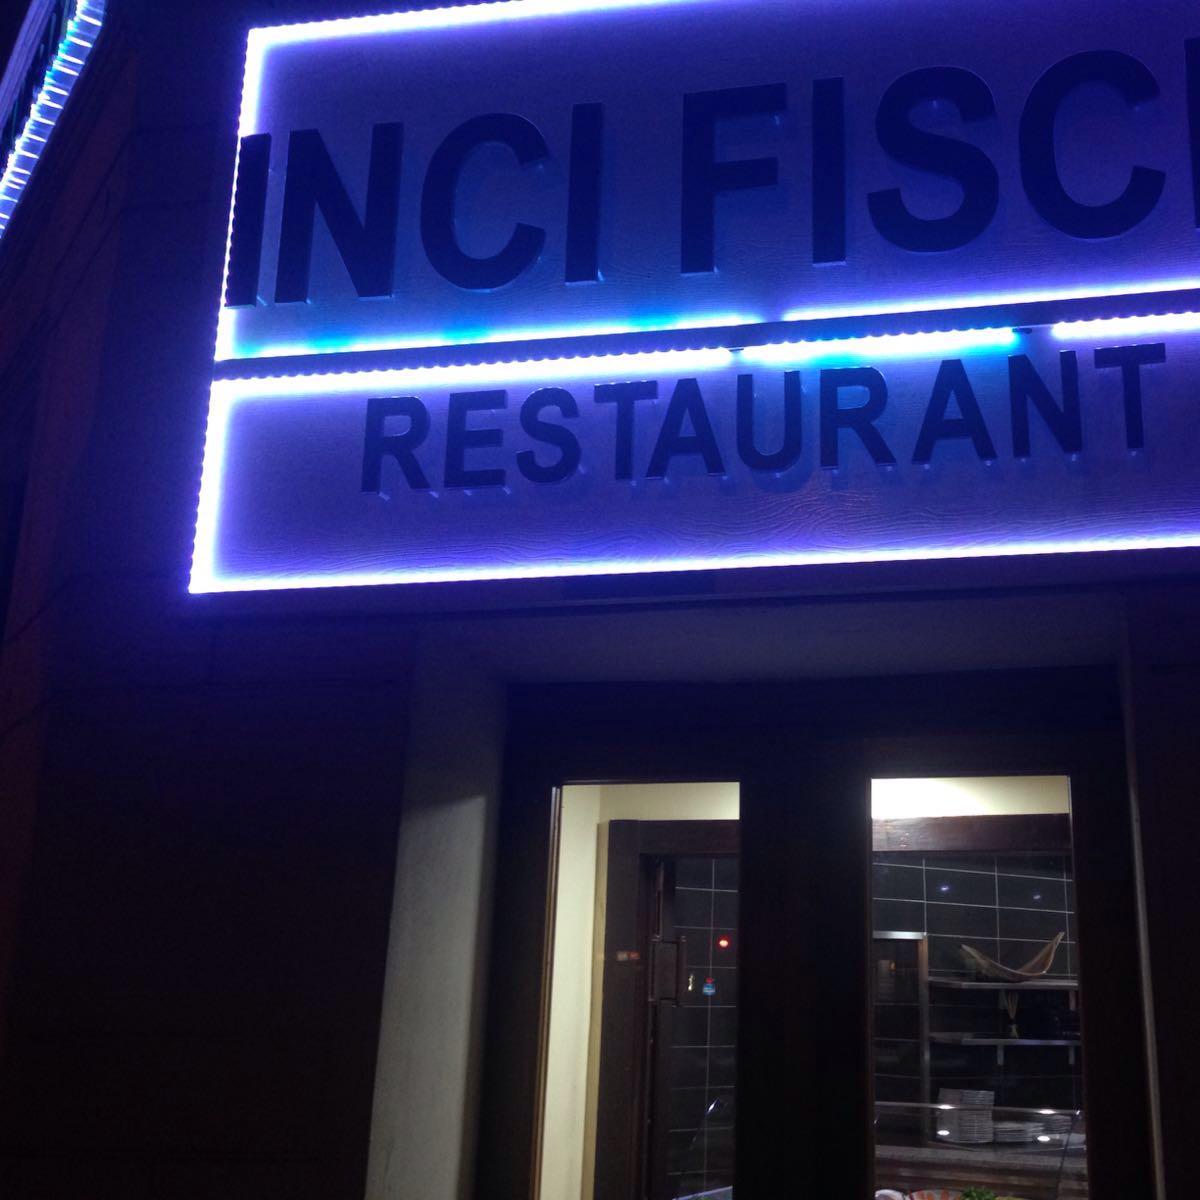 Restaurant "Inci Fischrestaurant" in Köln